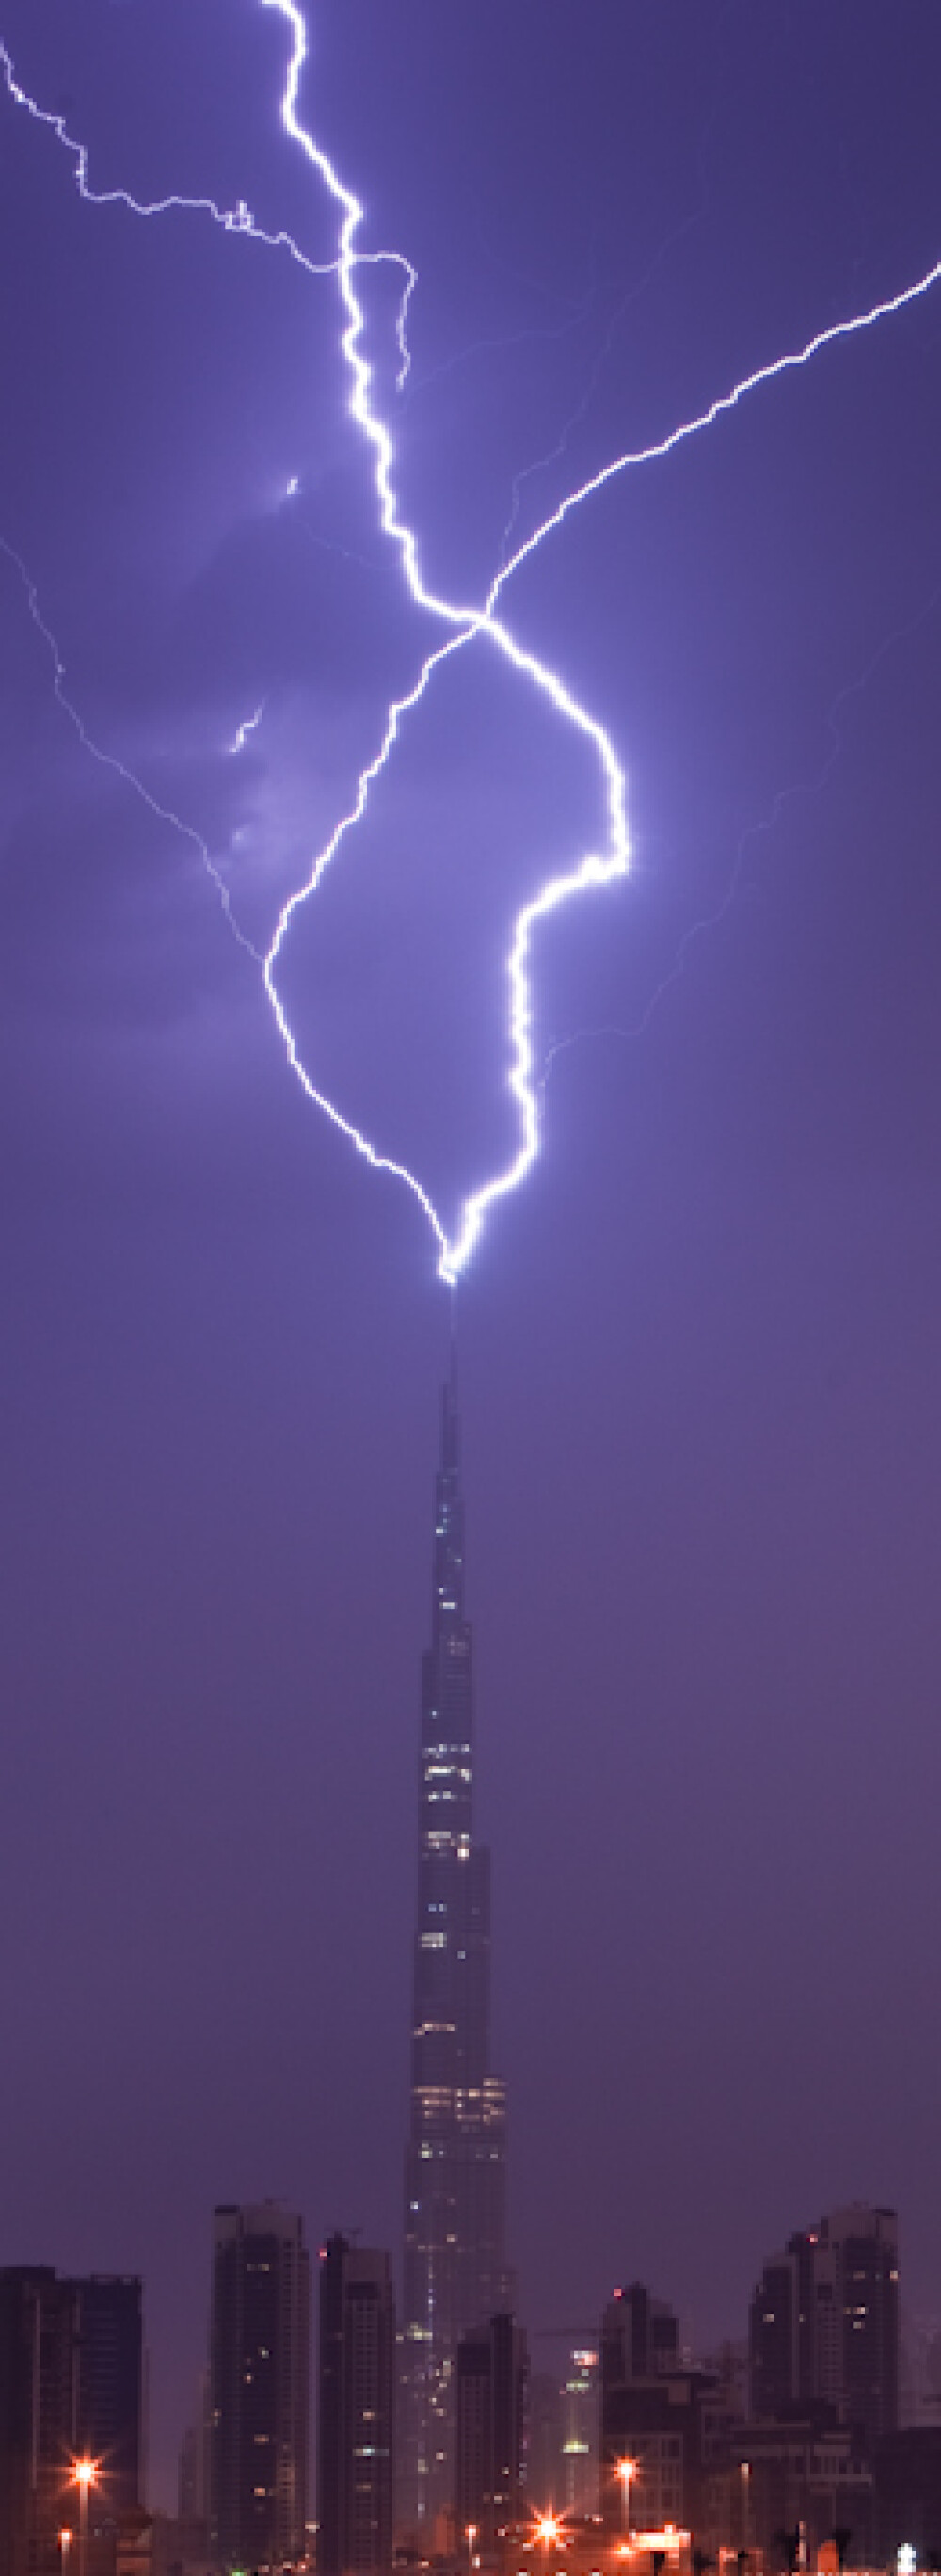 Burj Khalifa, cea mai inalta cladire din lume, fulgerata! SUPER IMAGINI - Imaginea 6